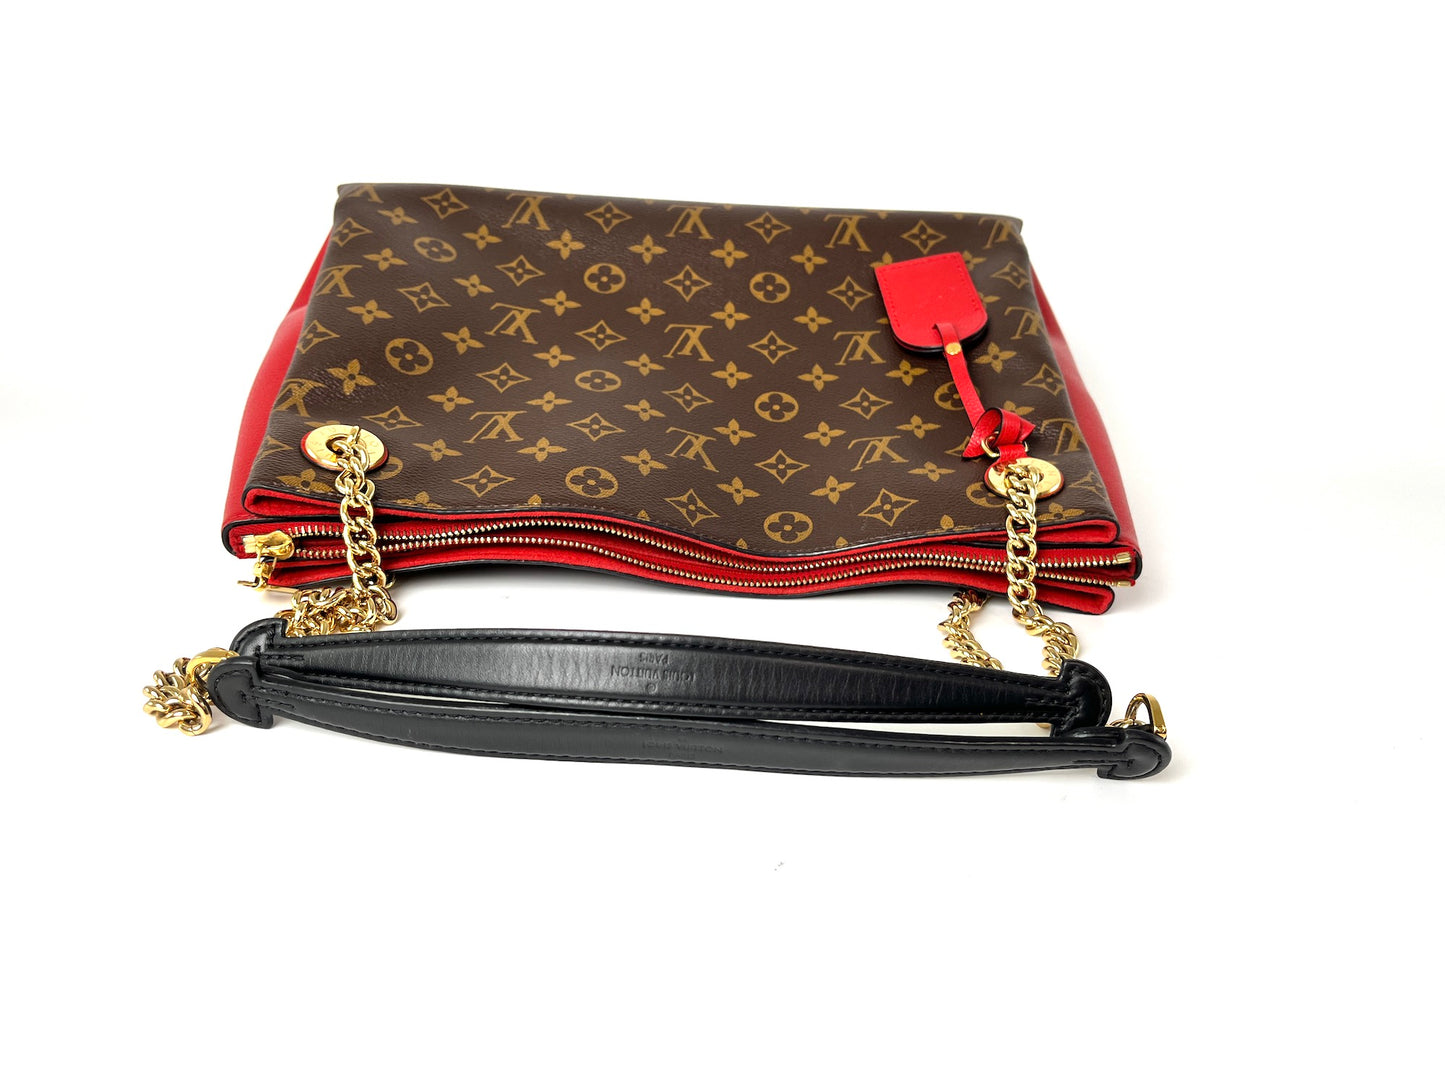 Louis Vuitton Surene MM Monogram Cerise Red Tote Bag